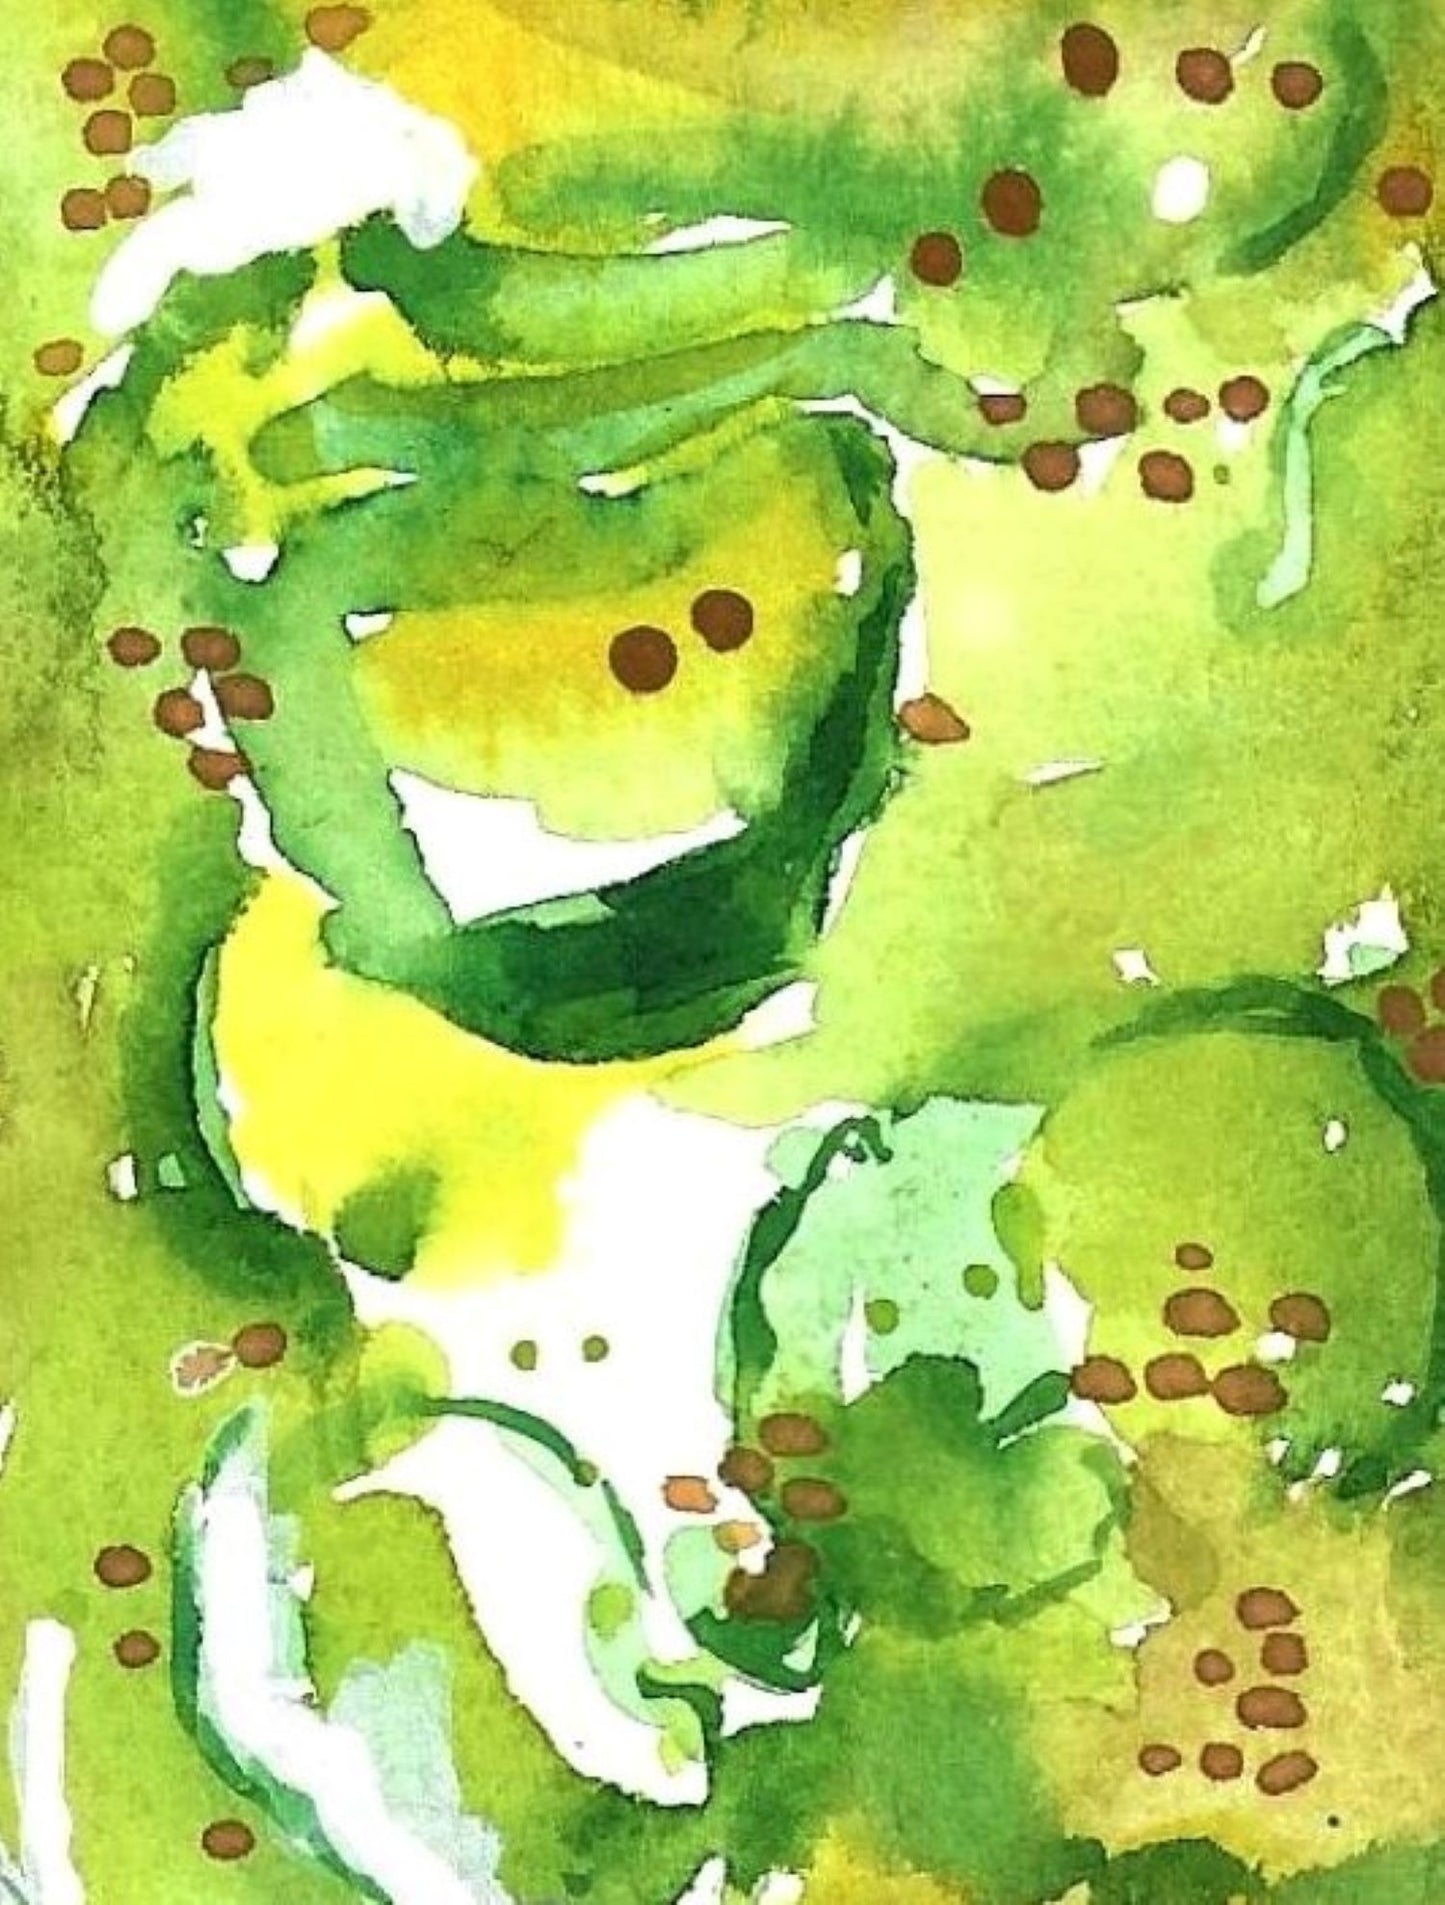 Pickle jar painting detail